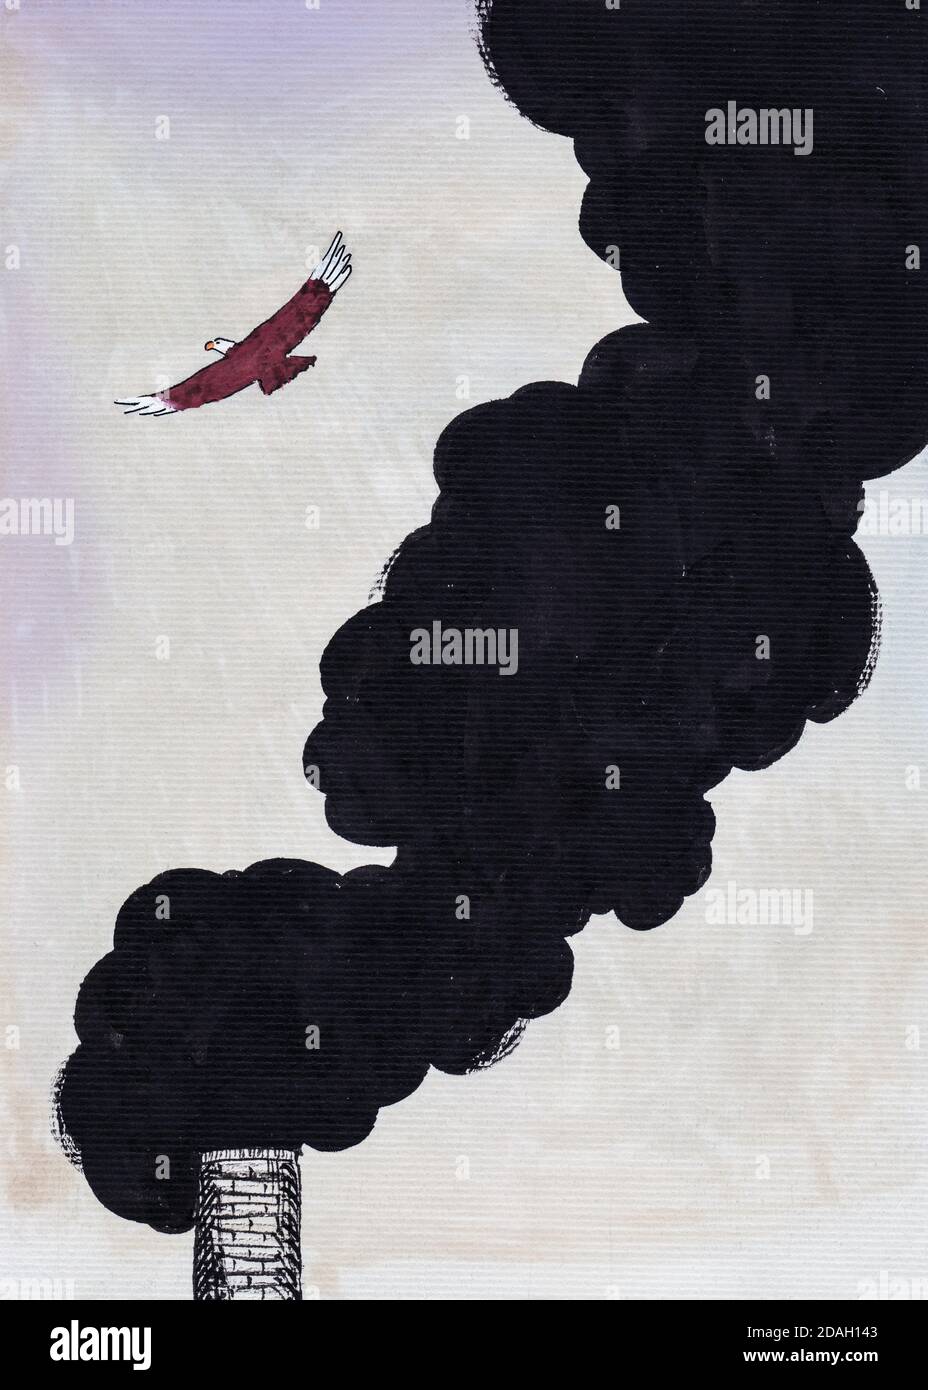 Illustrazione di un'aquila colorata che vola intorno ad un fumo spesso proveniente da un camino, in stile fumetto. Acquerello e disegno dell'inchiostro. Foto Stock